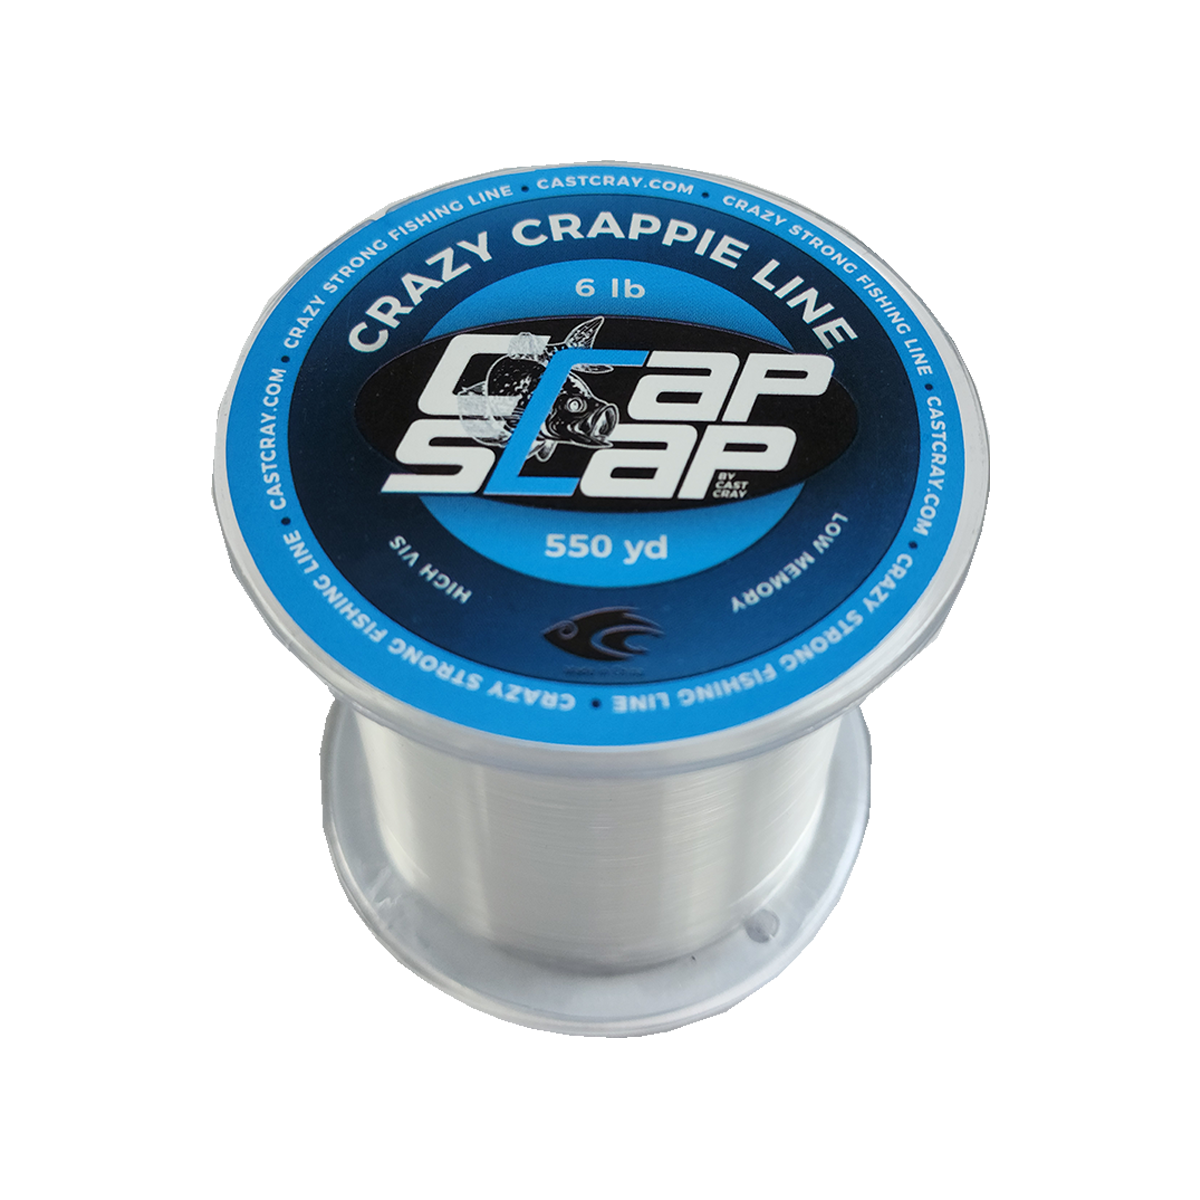 Crap Slap - Crazy Crappie Line - Clear 6lb